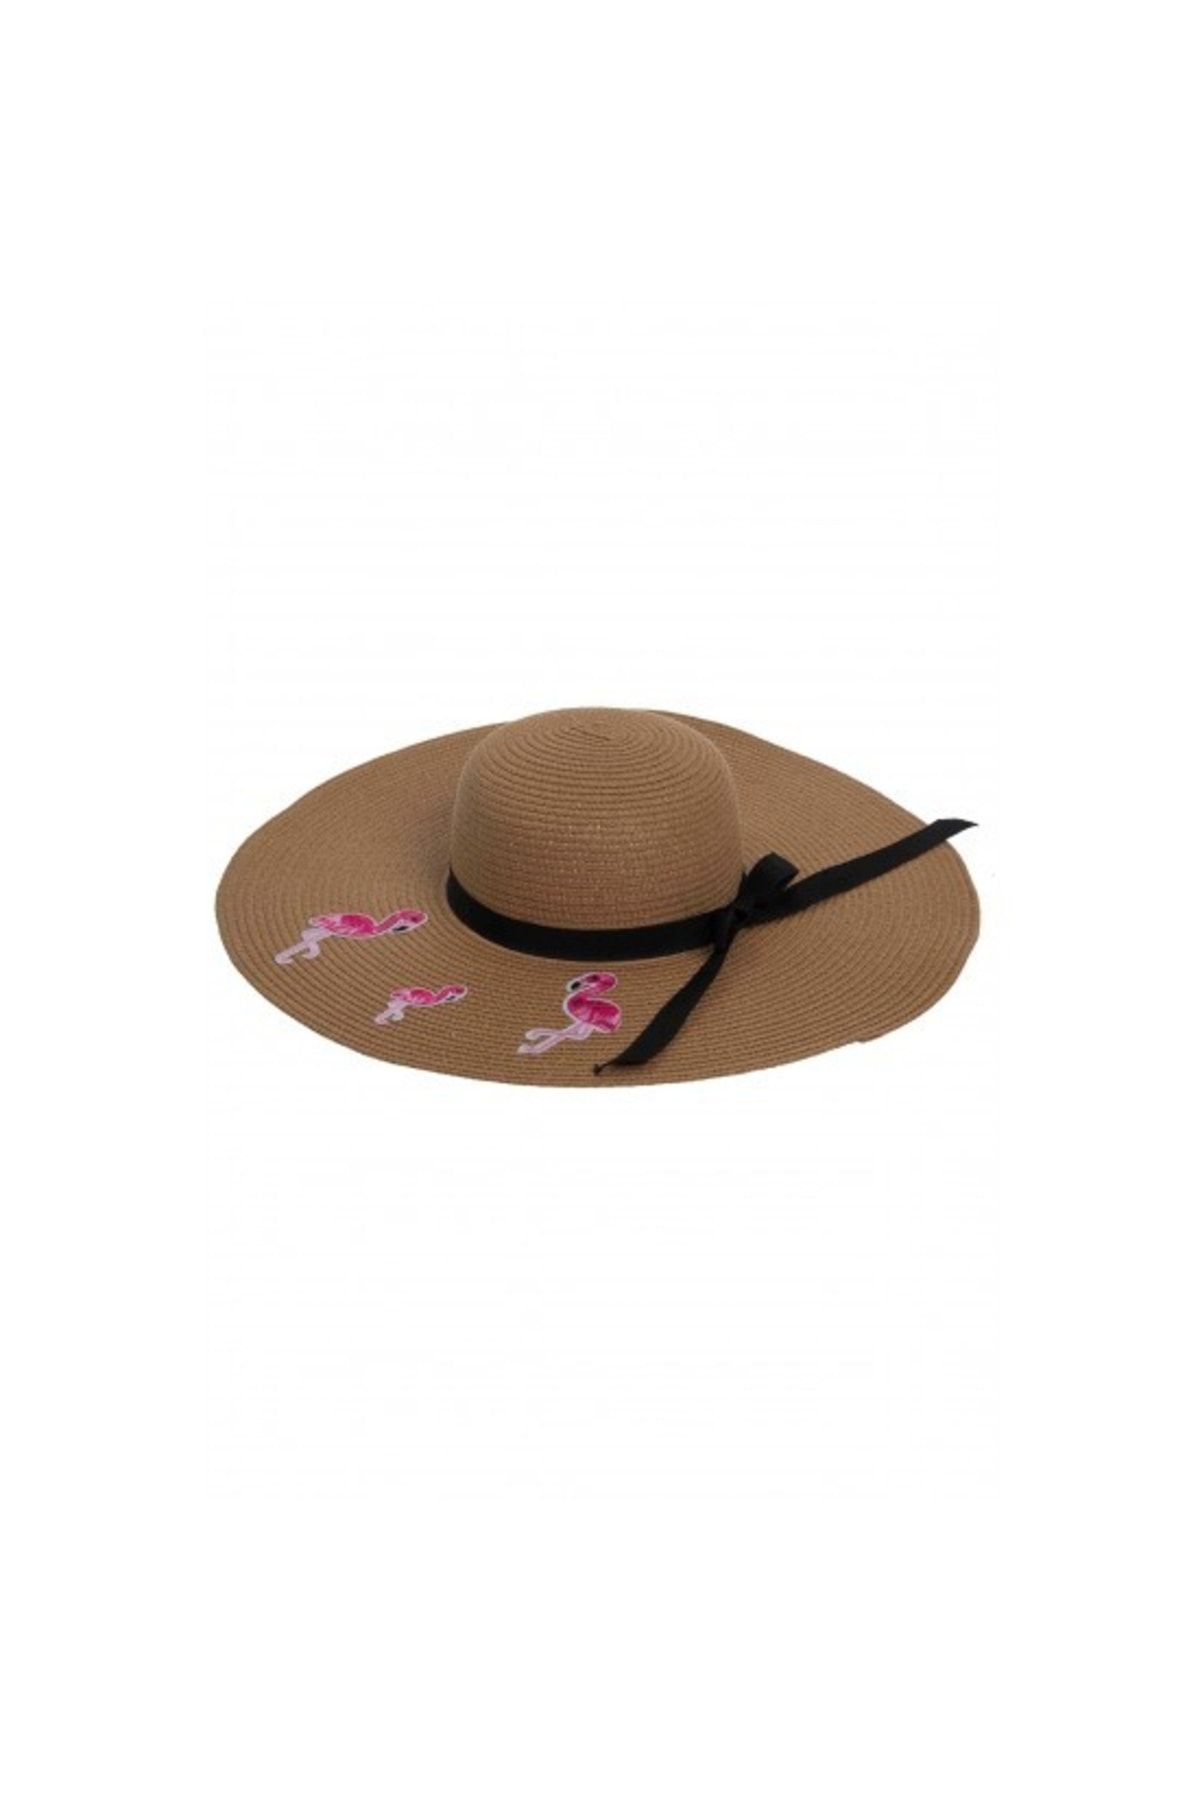 Bay Şapkacı Flamingo Hasır Kadın Şapka 7046